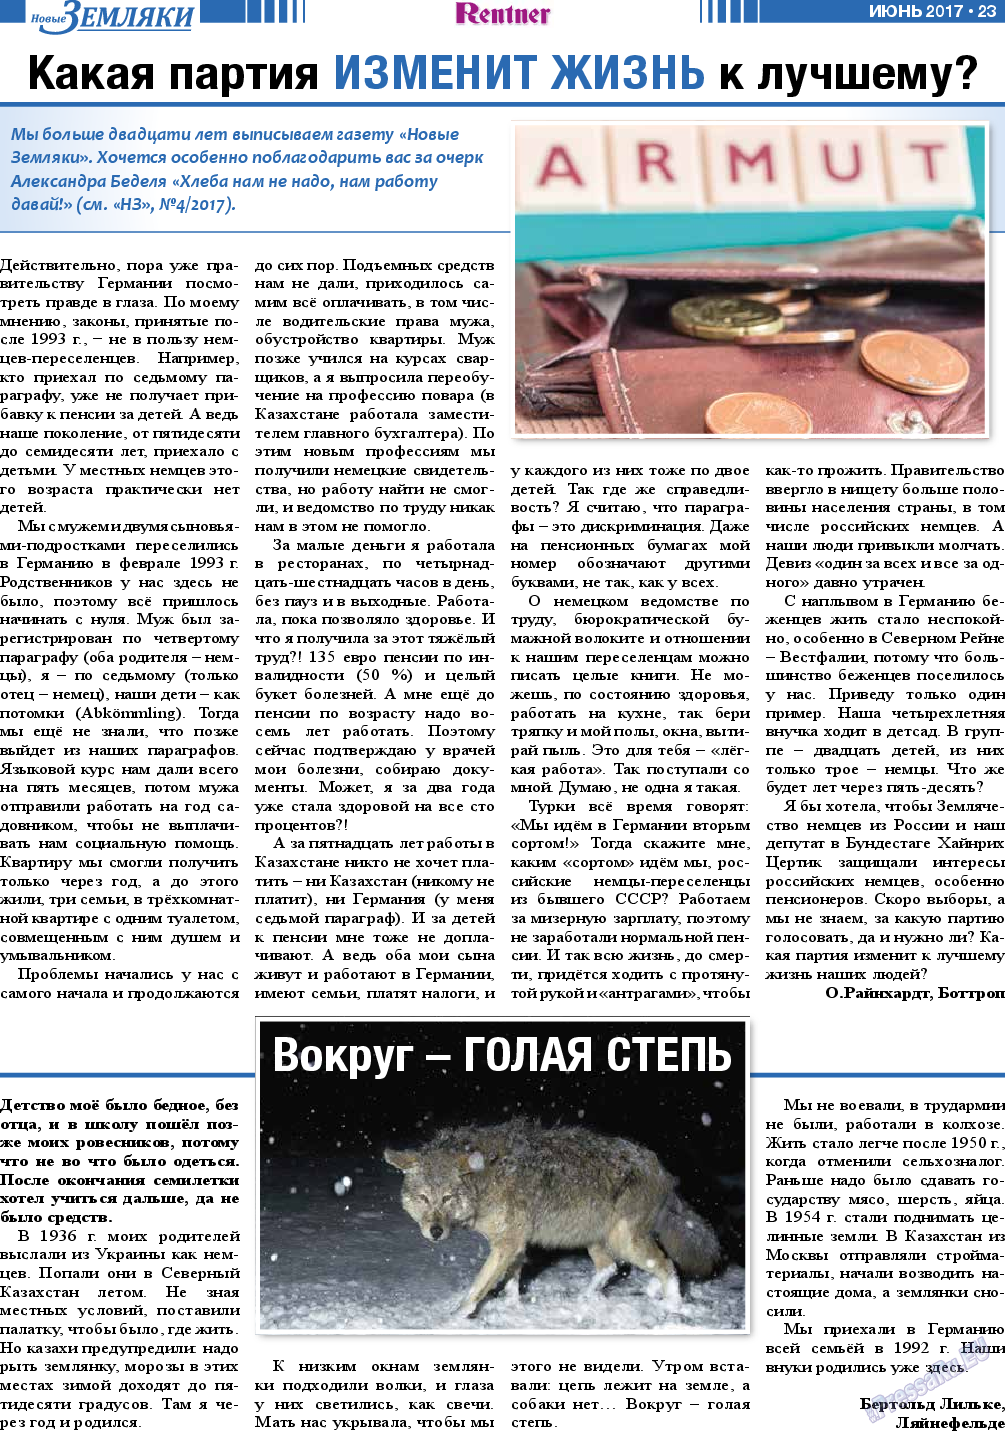 Новые Земляки, газета. 2017 №6 стр.23